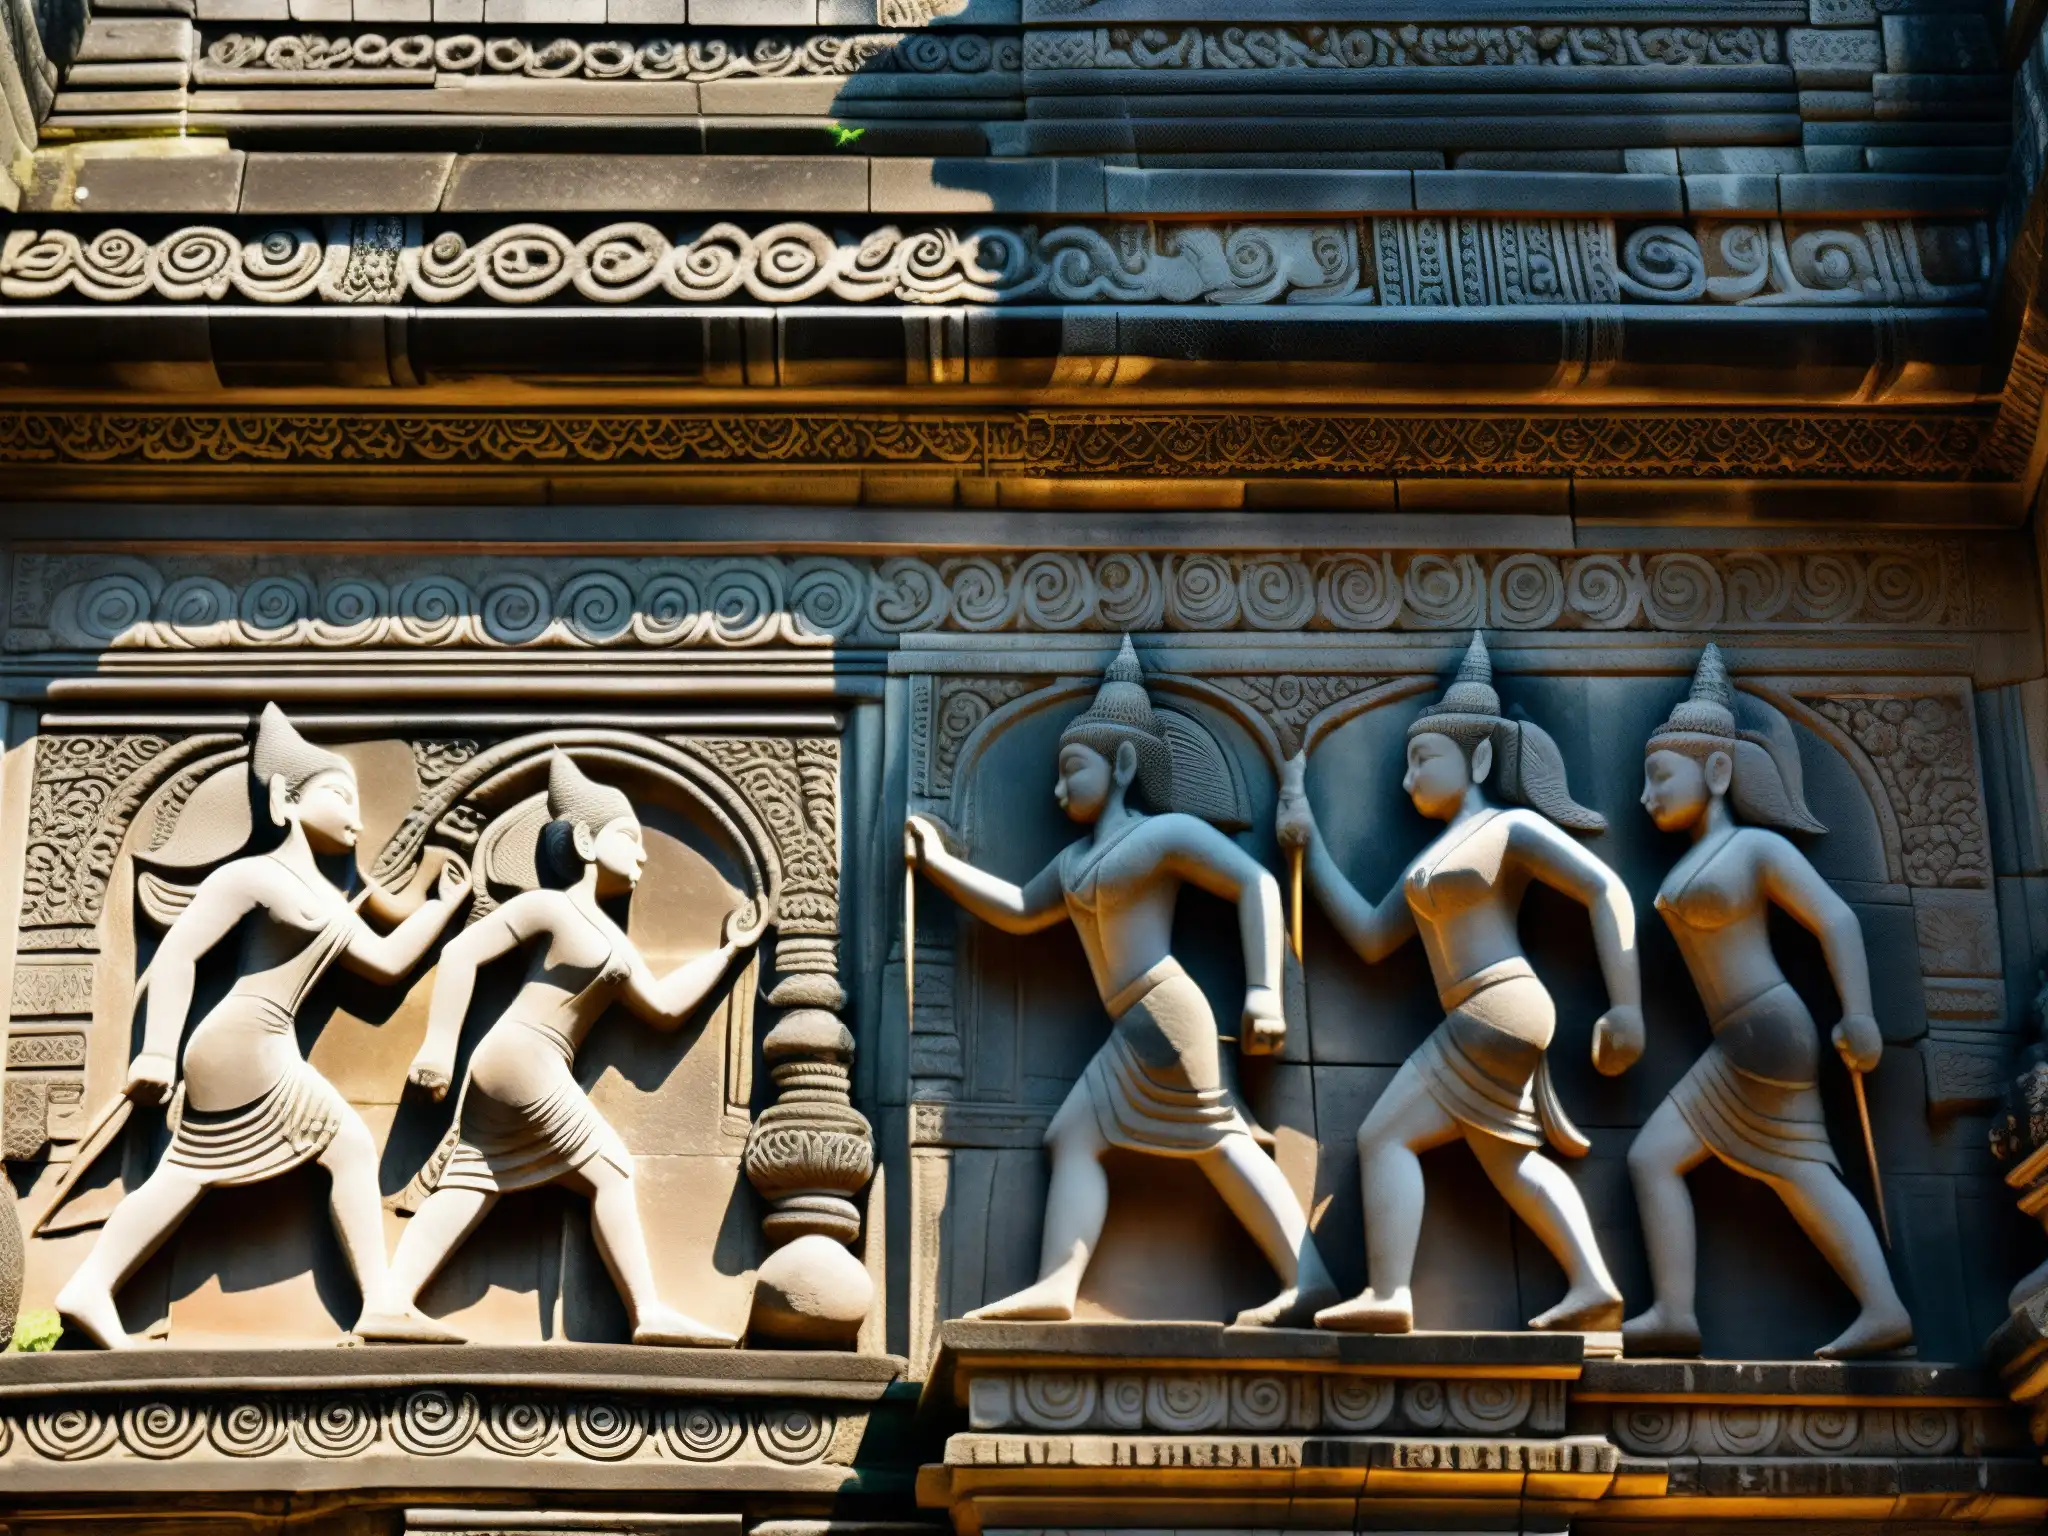 Detalles impresionantes de las leyendas y maldiciones en el Templo Preah Vihear, plasmados en intrincadas esculturas de piedra